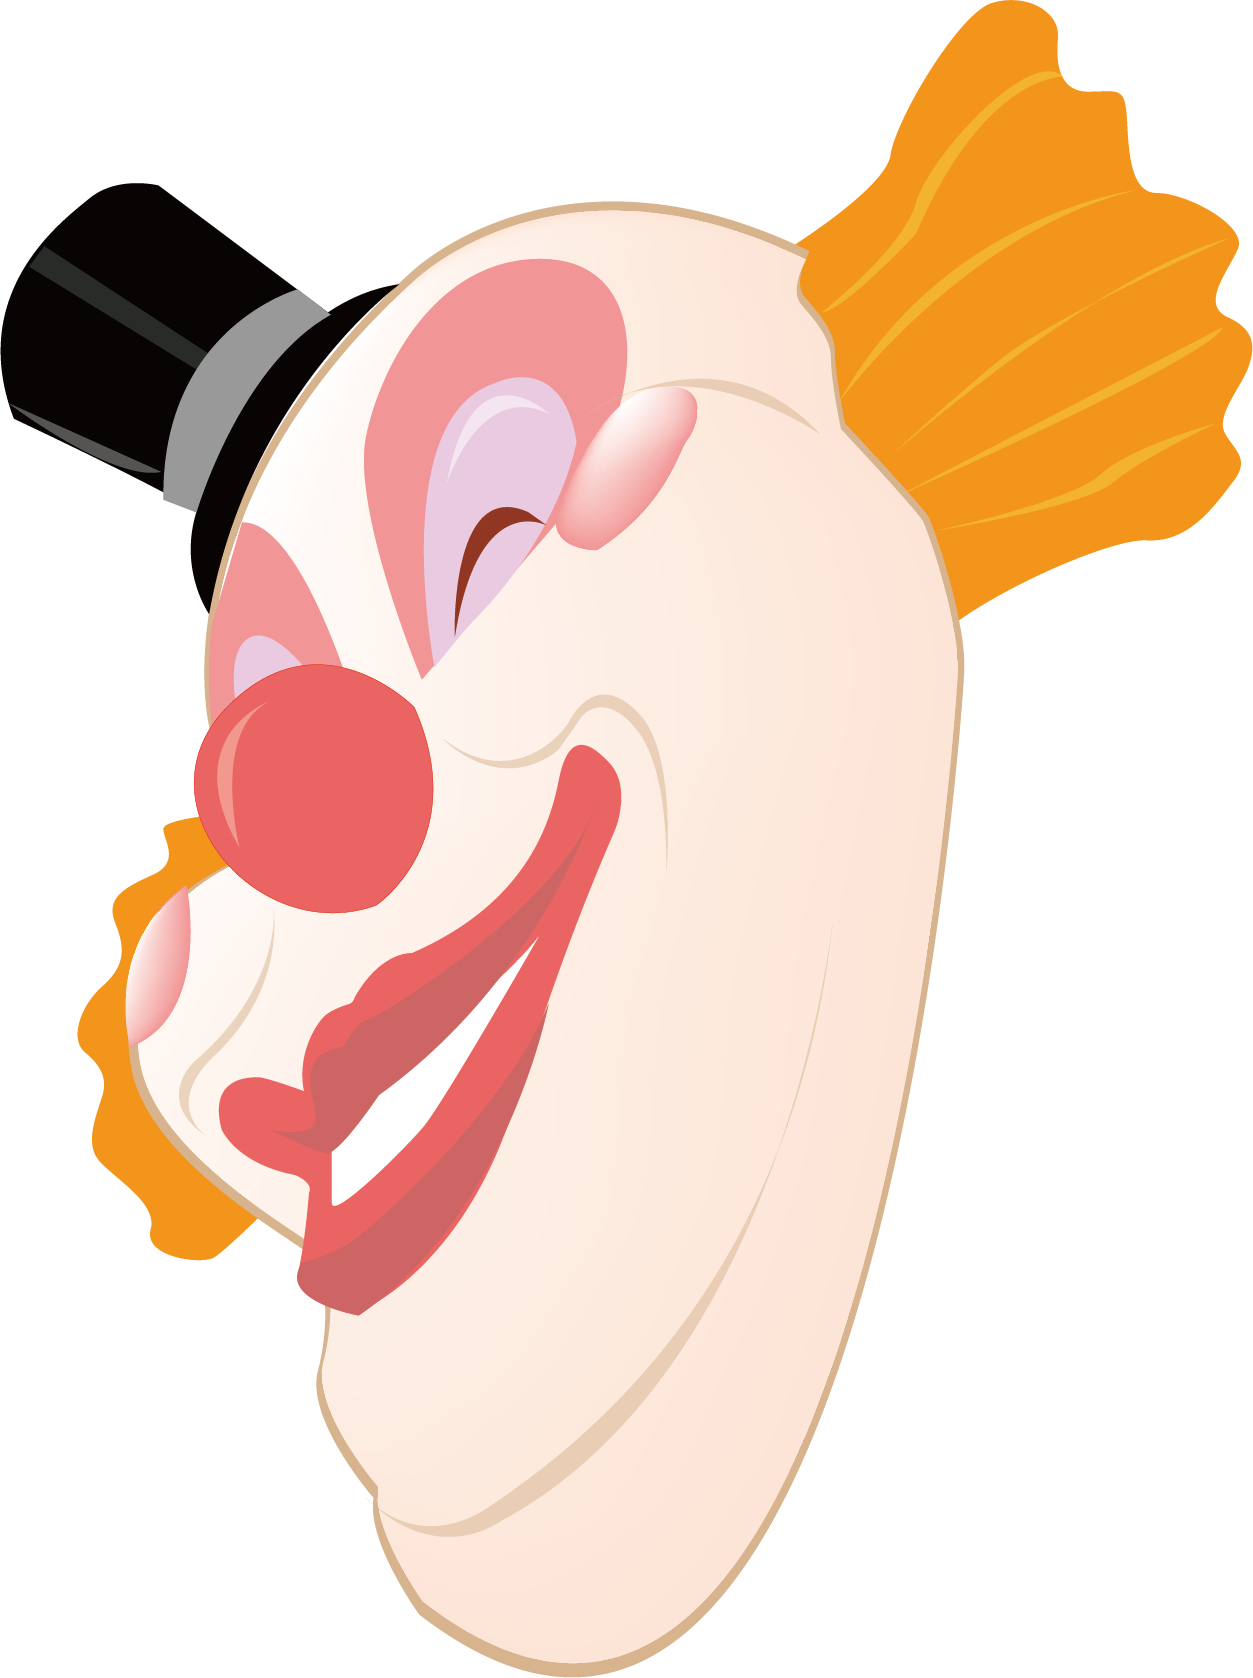 Mask Clown Illustration - Mask Clown Illustration (1253x1678)